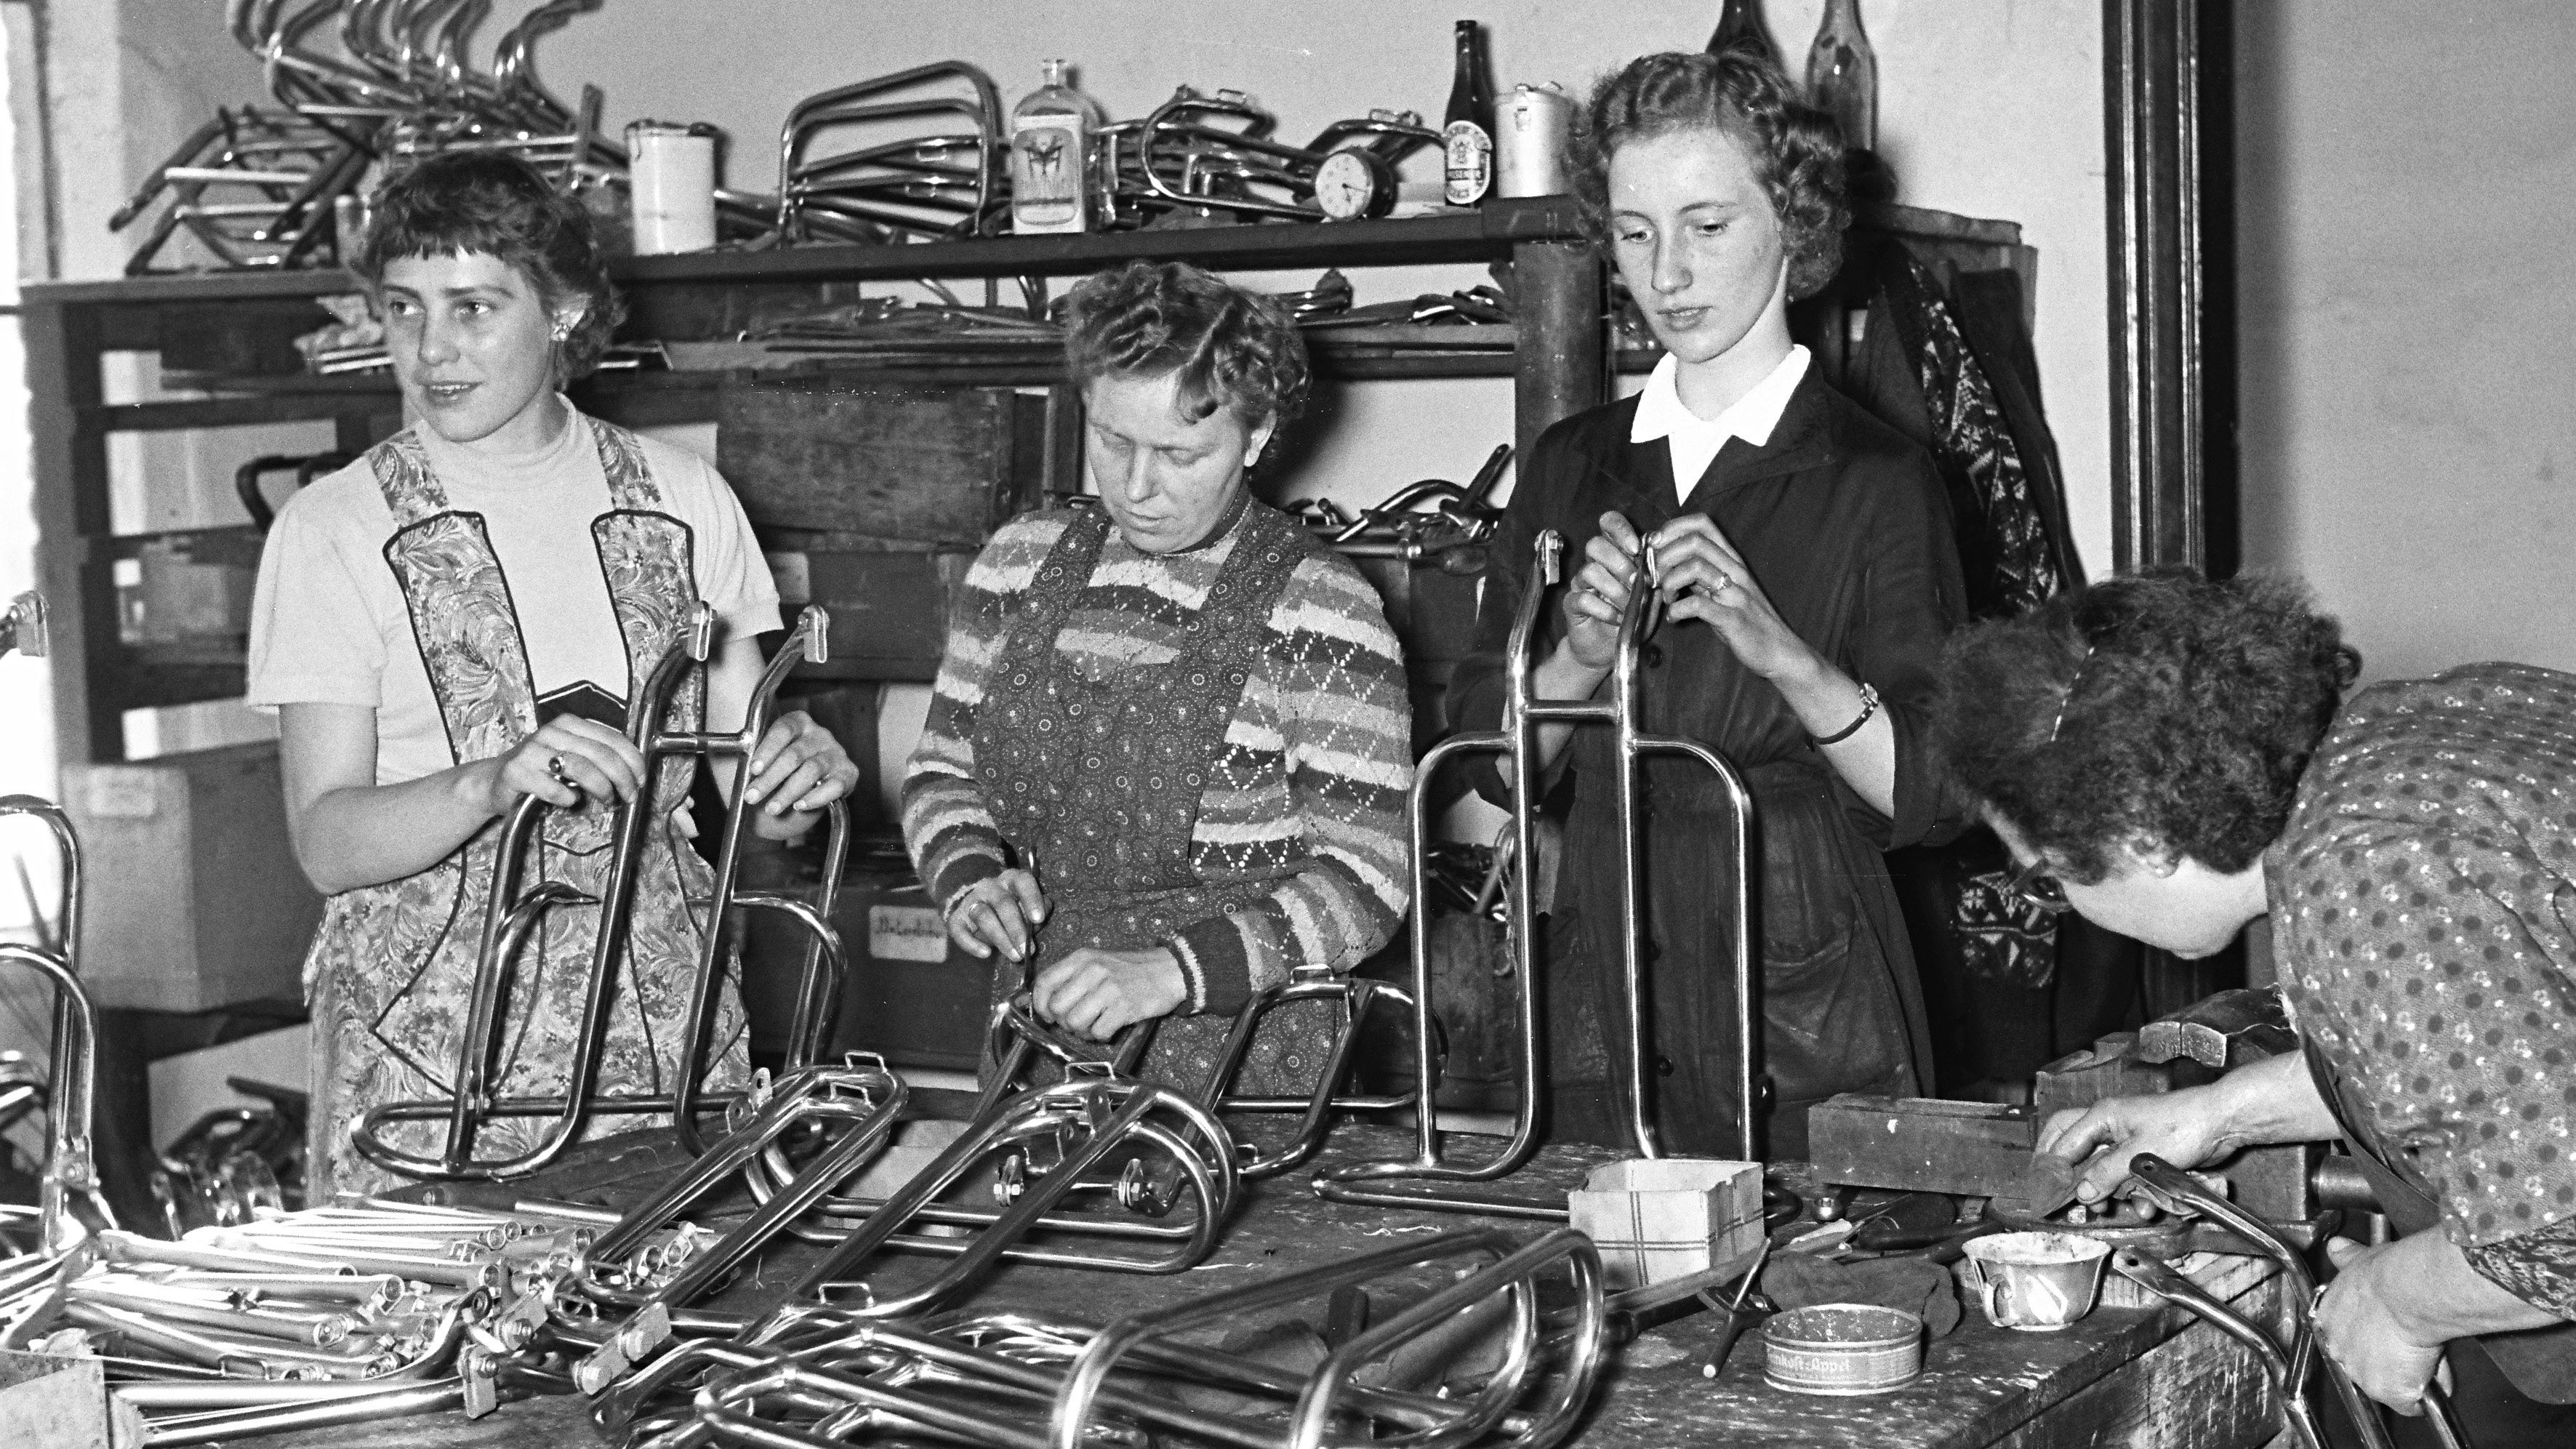 Frauen im Jahr 1955 bei der Arbeit: In der Firma Lietz fertigten sie Gepäckträger aus Rohren. Foto: OV-Fotograf Heinz Zurborg